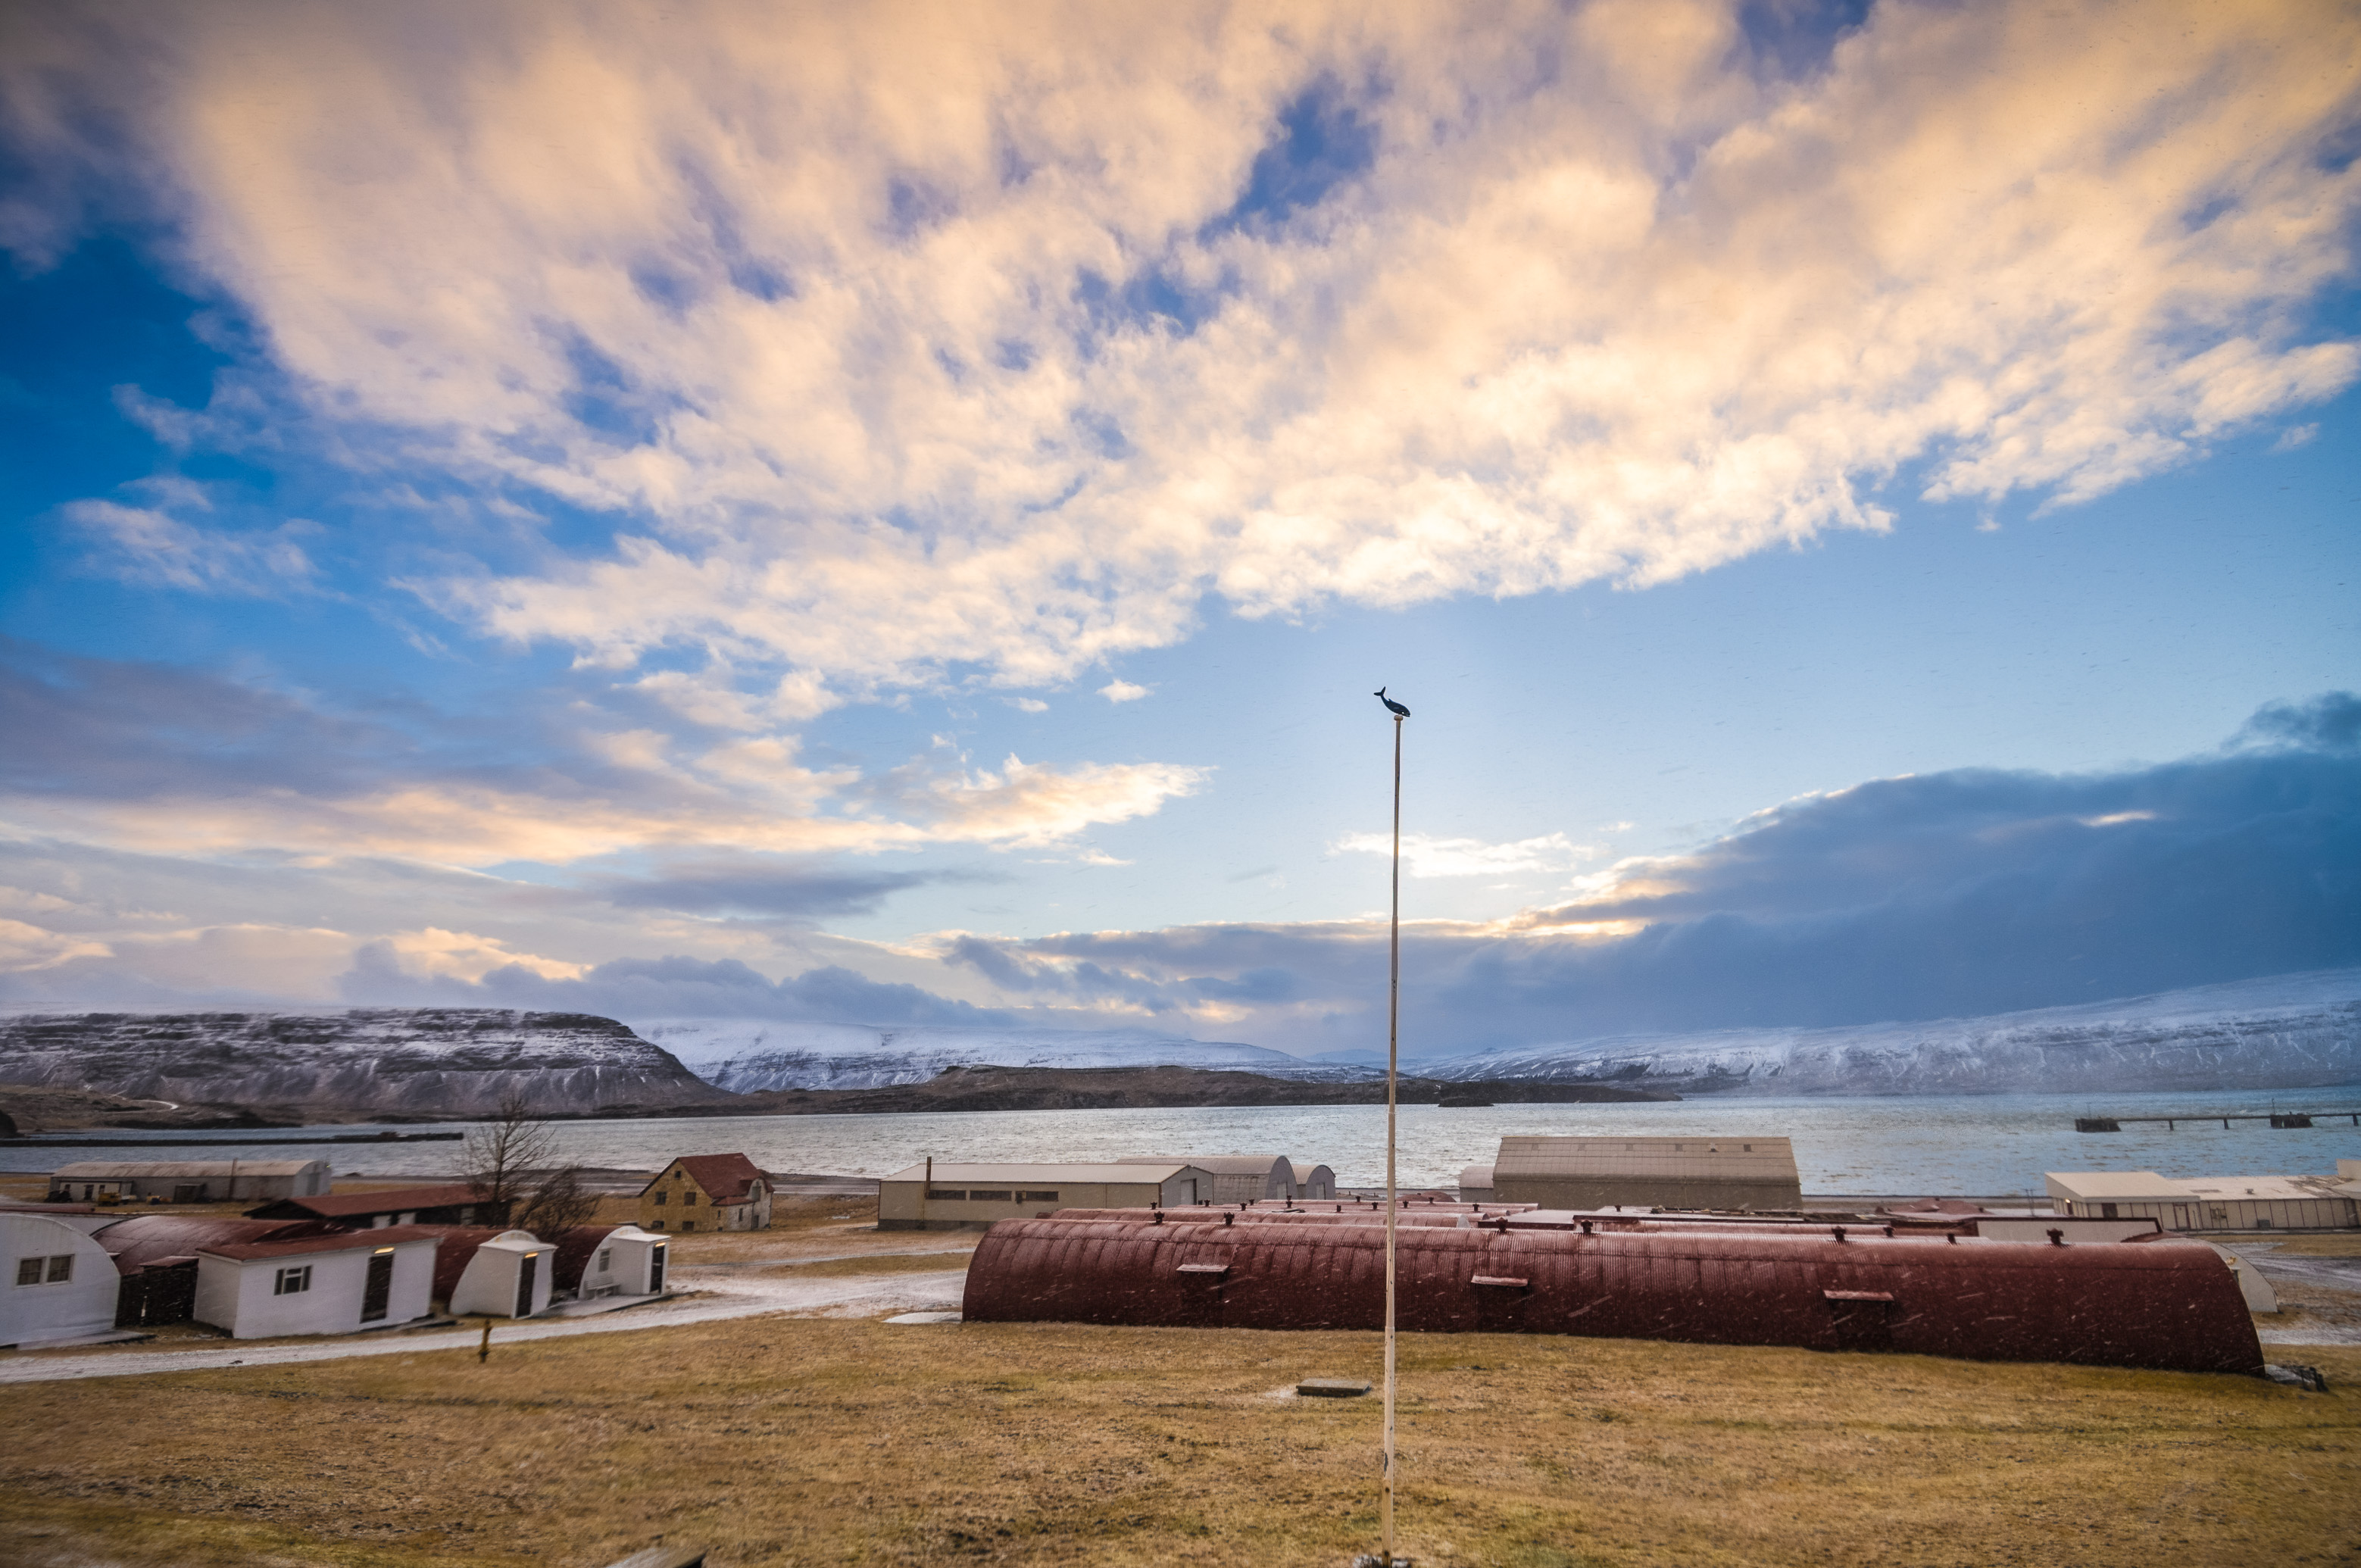 L'Islande en hiver : découvrez aussi notre "Carnet d'Islande" [édition] et le reportage paru dans Grands Reportages magazine #328 / Photos : Aurélien BRUSINI